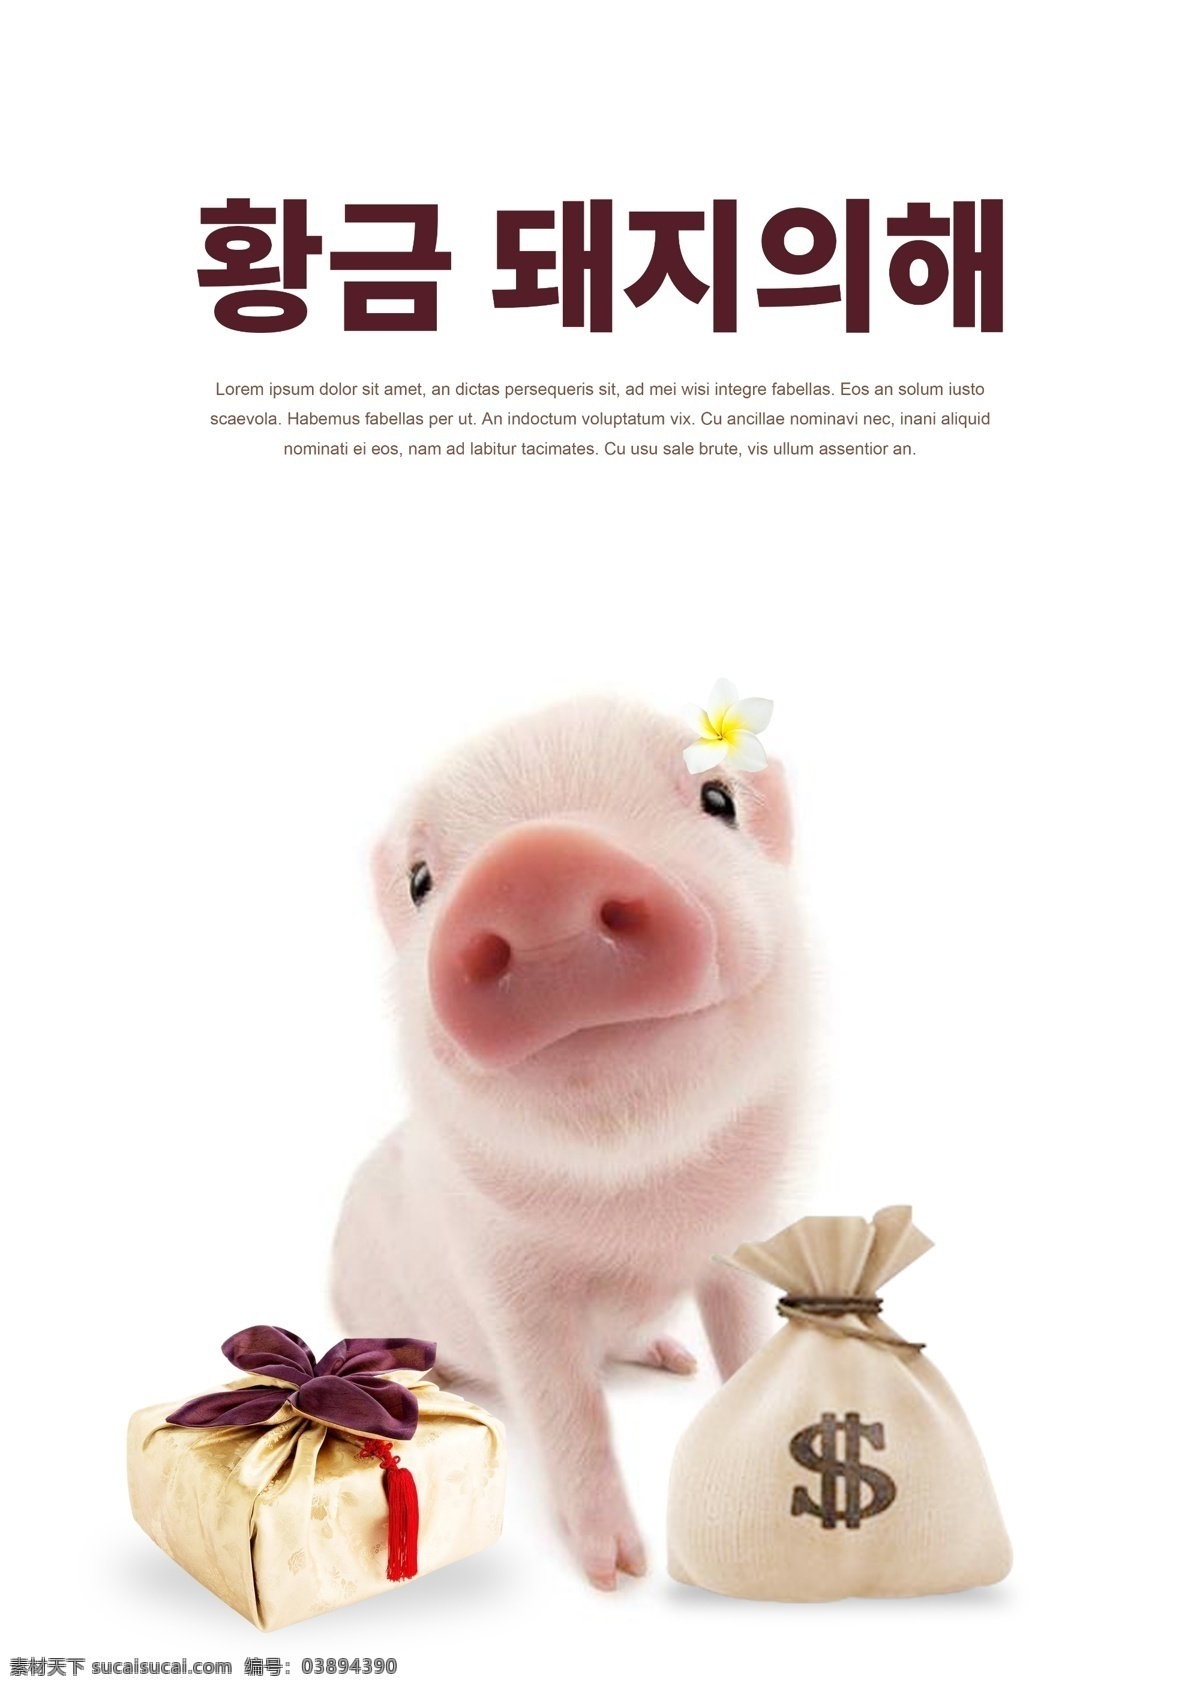 2019 年 支持 下 肝脏药物 猪 时尚 海报 韩国 新的一年 金 金猪 纹理金袋 美元 事实上